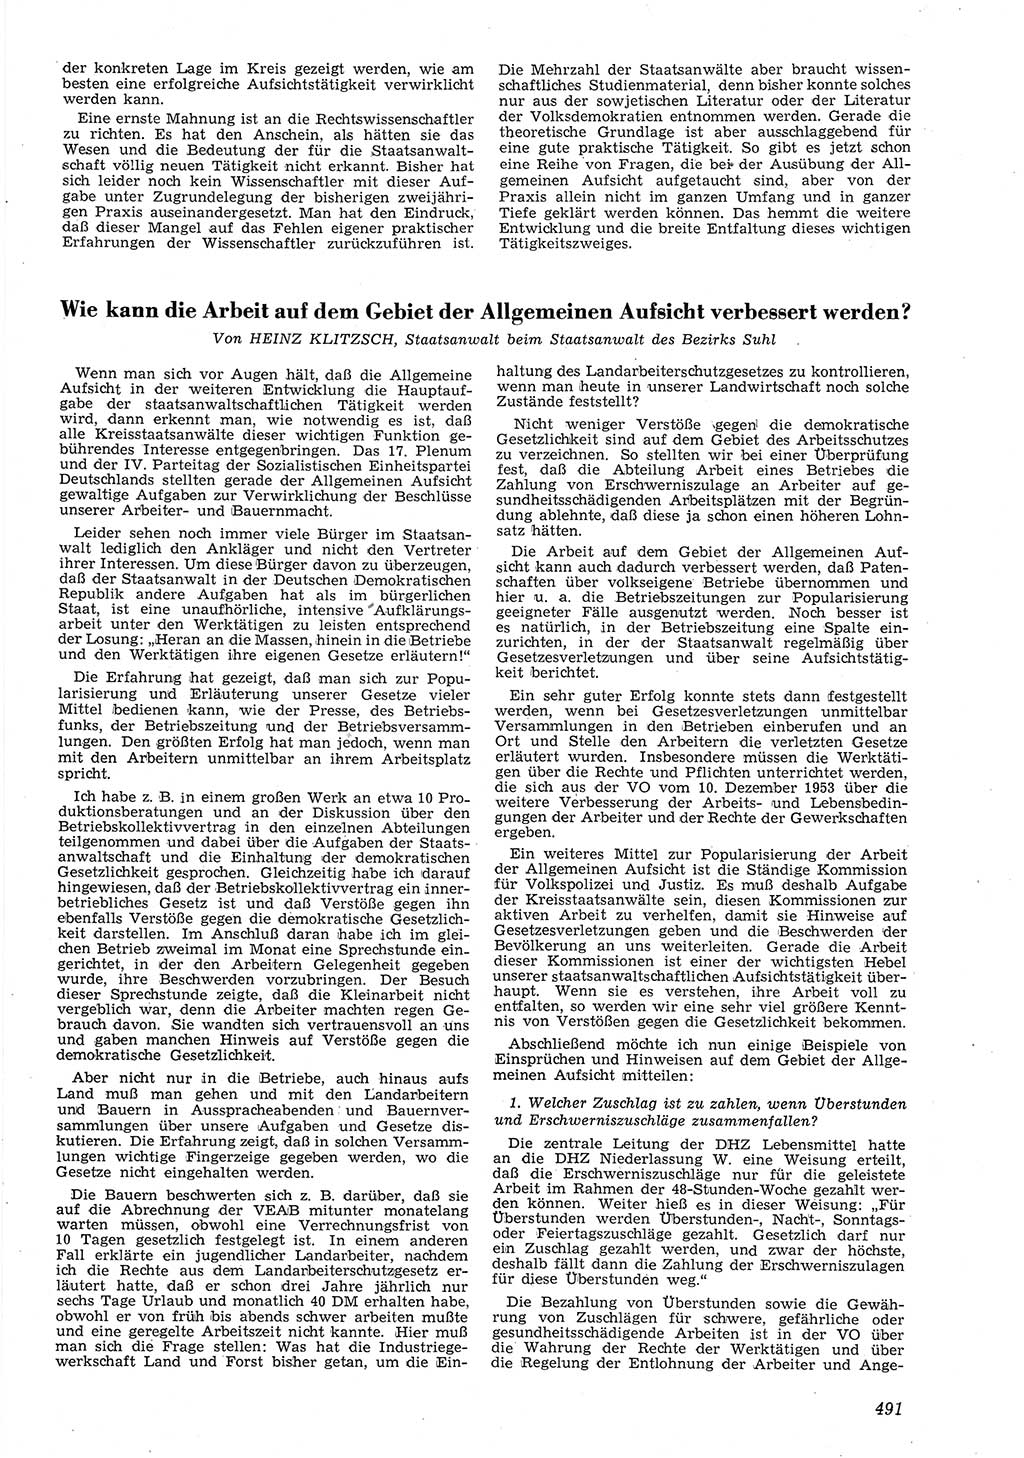 Neue Justiz (NJ), Zeitschrift für Recht und Rechtswissenschaft [Deutsche Demokratische Republik (DDR)], 8. Jahrgang 1954, Seite 491 (NJ DDR 1954, S. 491)